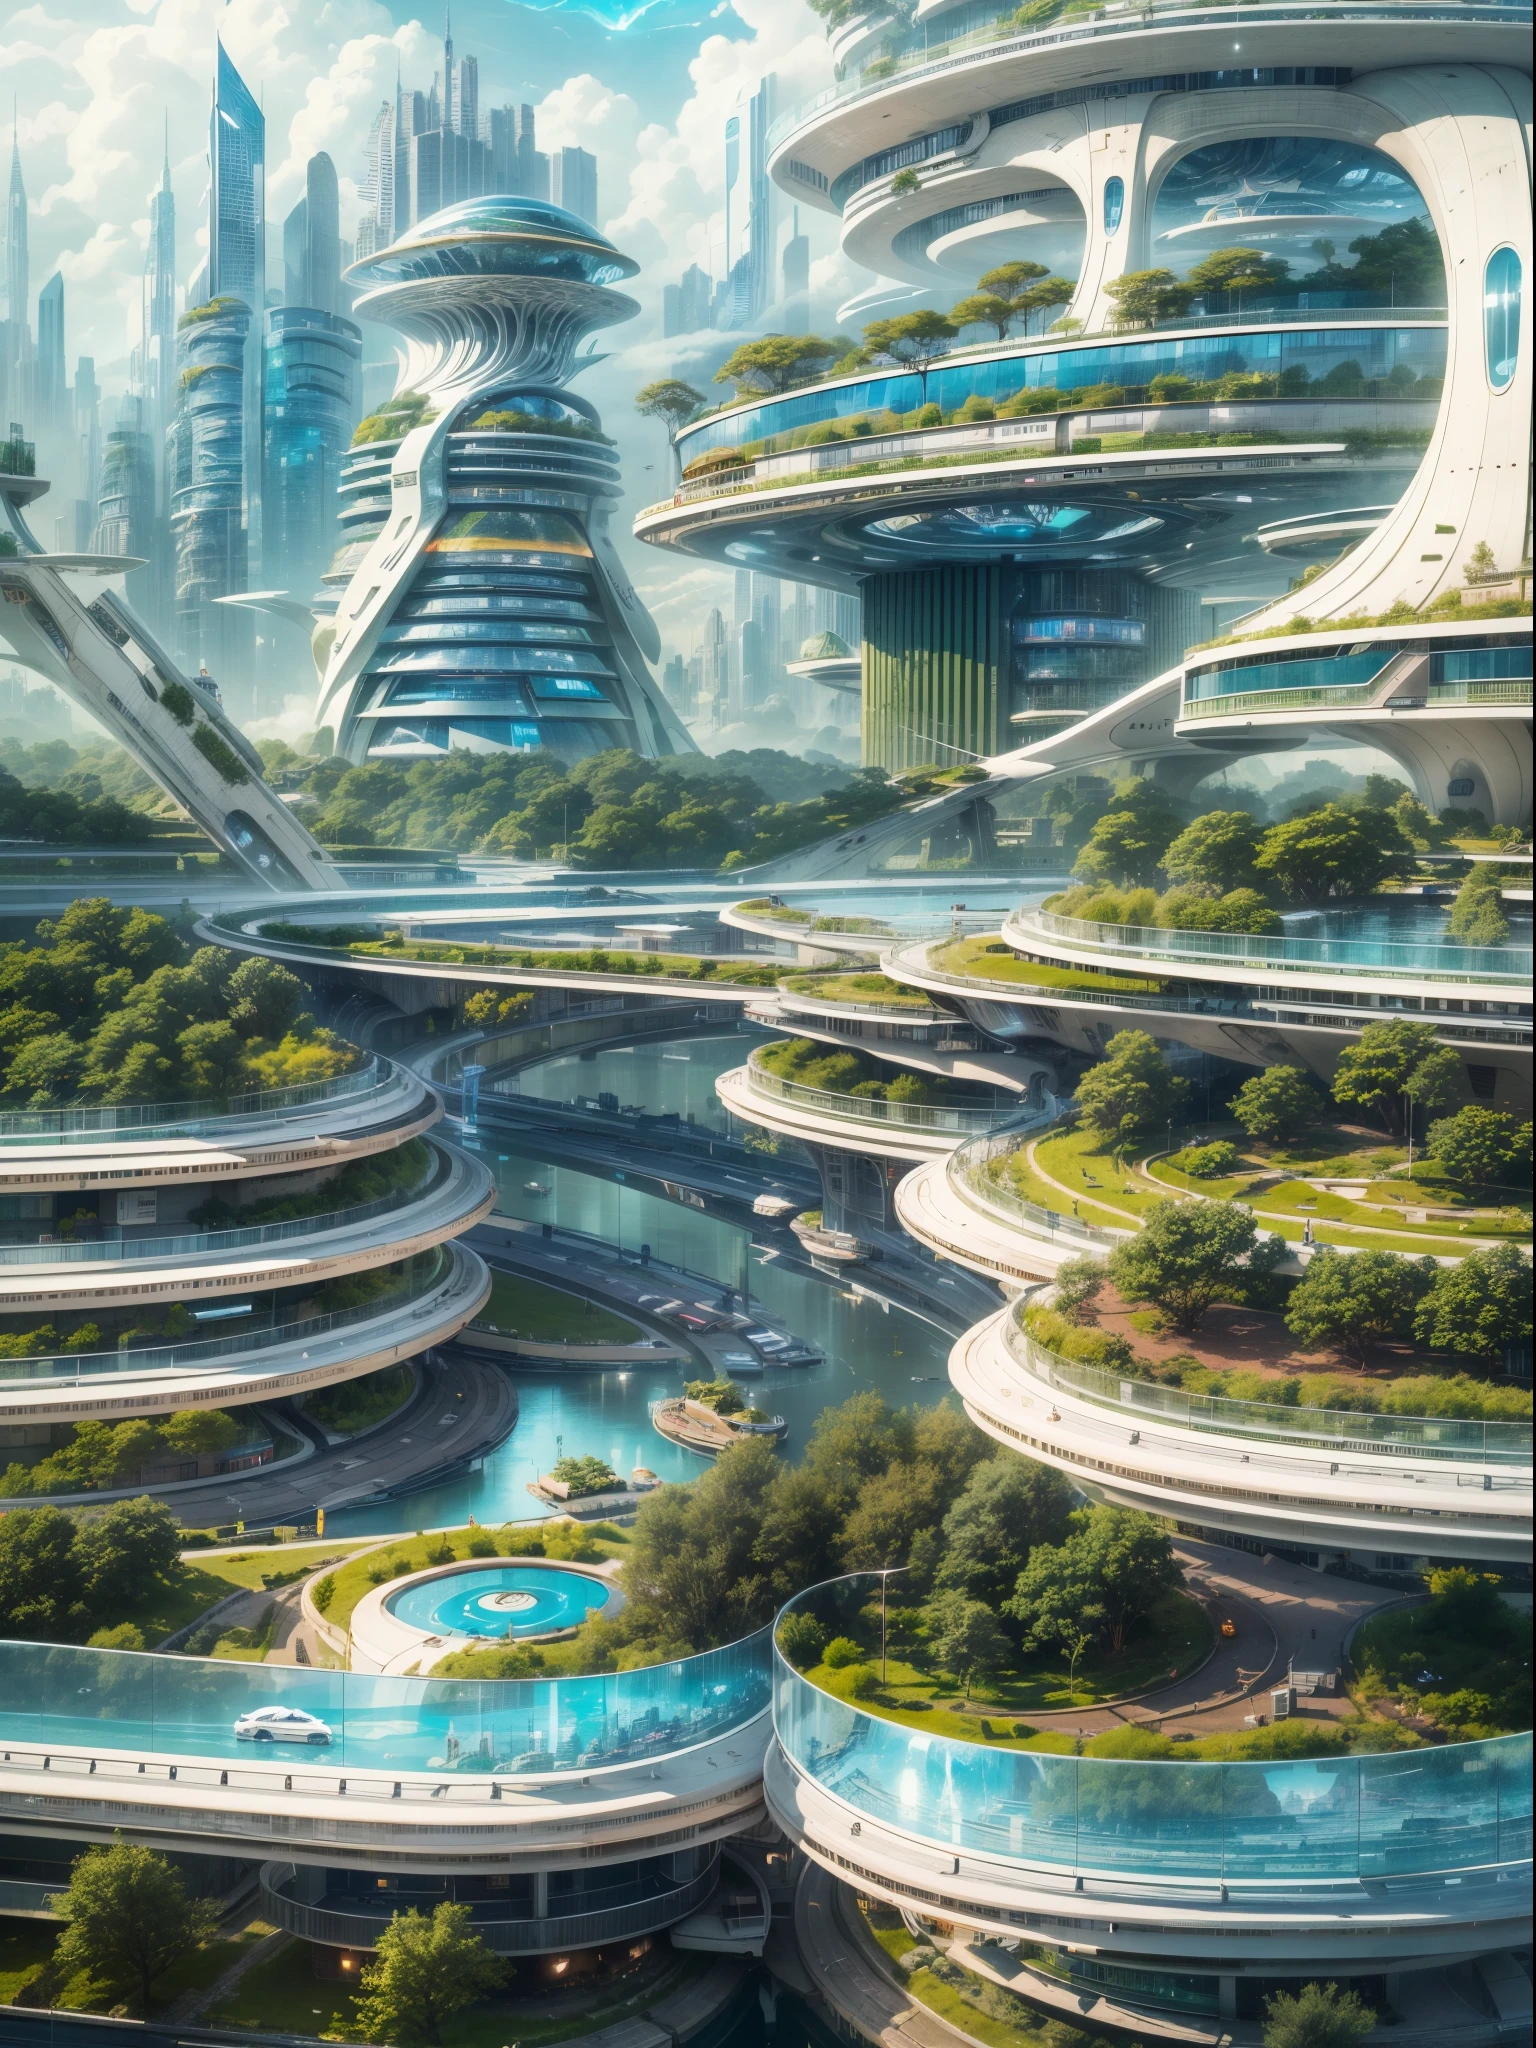 (最高品質,4k,8K,高解像度,傑作:1.2),非常に詳細な,(現実的,photo現実的,photo-現実的:1.37),未来的な水上都市,未来のテクノロジー,巨大なハイテクな平らなプラットフォーム上の都市,飛行船,空に浮かぶ,未来都市,small 飛行船 around,ハイテク半球形プラットフォーム,カラフルなライト,高度なアーキテクチャ,近代的な建物,高層ビル,雲に届く,畏敬の念を抱かせる景色,都市景観,印象的なデザイン,自然とのシームレスな融合,ダイナミックで活気のある雰囲気,未来の交通システム,ホバリング車両,透明な通路,豊かな緑,空中庭園,滝,壮大なスカイライン,水面に映る,輝く川,建築の革新,futuristic 高層ビル,透明なドーム,変わった形の建物,高架歩道,印象的なスカイライン,光るライト,未来のテクノロジー,ミニマリストデザイン,景色の良い展望台,全景,雲を突き抜ける塔,鮮やかな色彩,壮大な日の出,壮大な夕日,まばゆいばかりの光の展示,魔法のような雰囲気,未来の都市,都会のユートピア,贅沢なライフスタイル,革新的なエネルギー源,持続可能な発展,スマートシティテクノロジー,高度なインフラ,静かな雰囲気,自然と技術の調和のとれた共存,畏敬の念を抱かせる街並み,前例のない都市計画,建物と自然のシームレスなつながり,ハイテク都市,最先端の工学の驚異,都市生活の未来,先見性のある建築コンセプト,エネルギー効率の高い建物,環境との調和,雲の上に浮かぶ街,ユートピアの夢が現実になった,無限の可能性,高度な交通ネットワーク,グリーンエネルギーの統合,革新的な素材,印象的なホログラフィックディスプレイ,高度な通信システム,息を呑むような空中景観,平和で穏やかな環境,モダニズムの美学,天上の美しさ